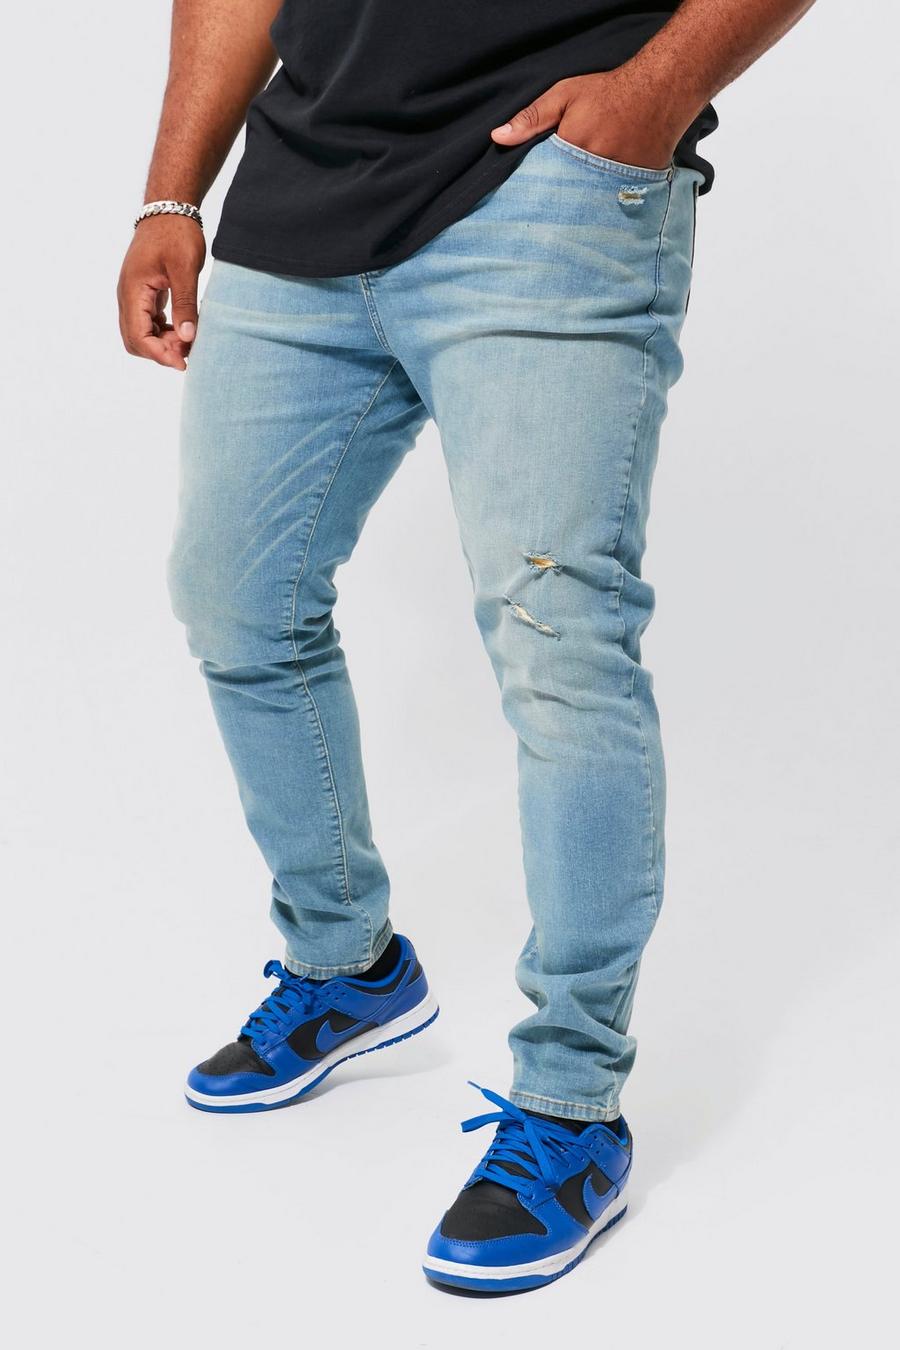 Jeans Plus Size Skinny Fit Stretch con strappi sul ginocchio, Antique wash azul